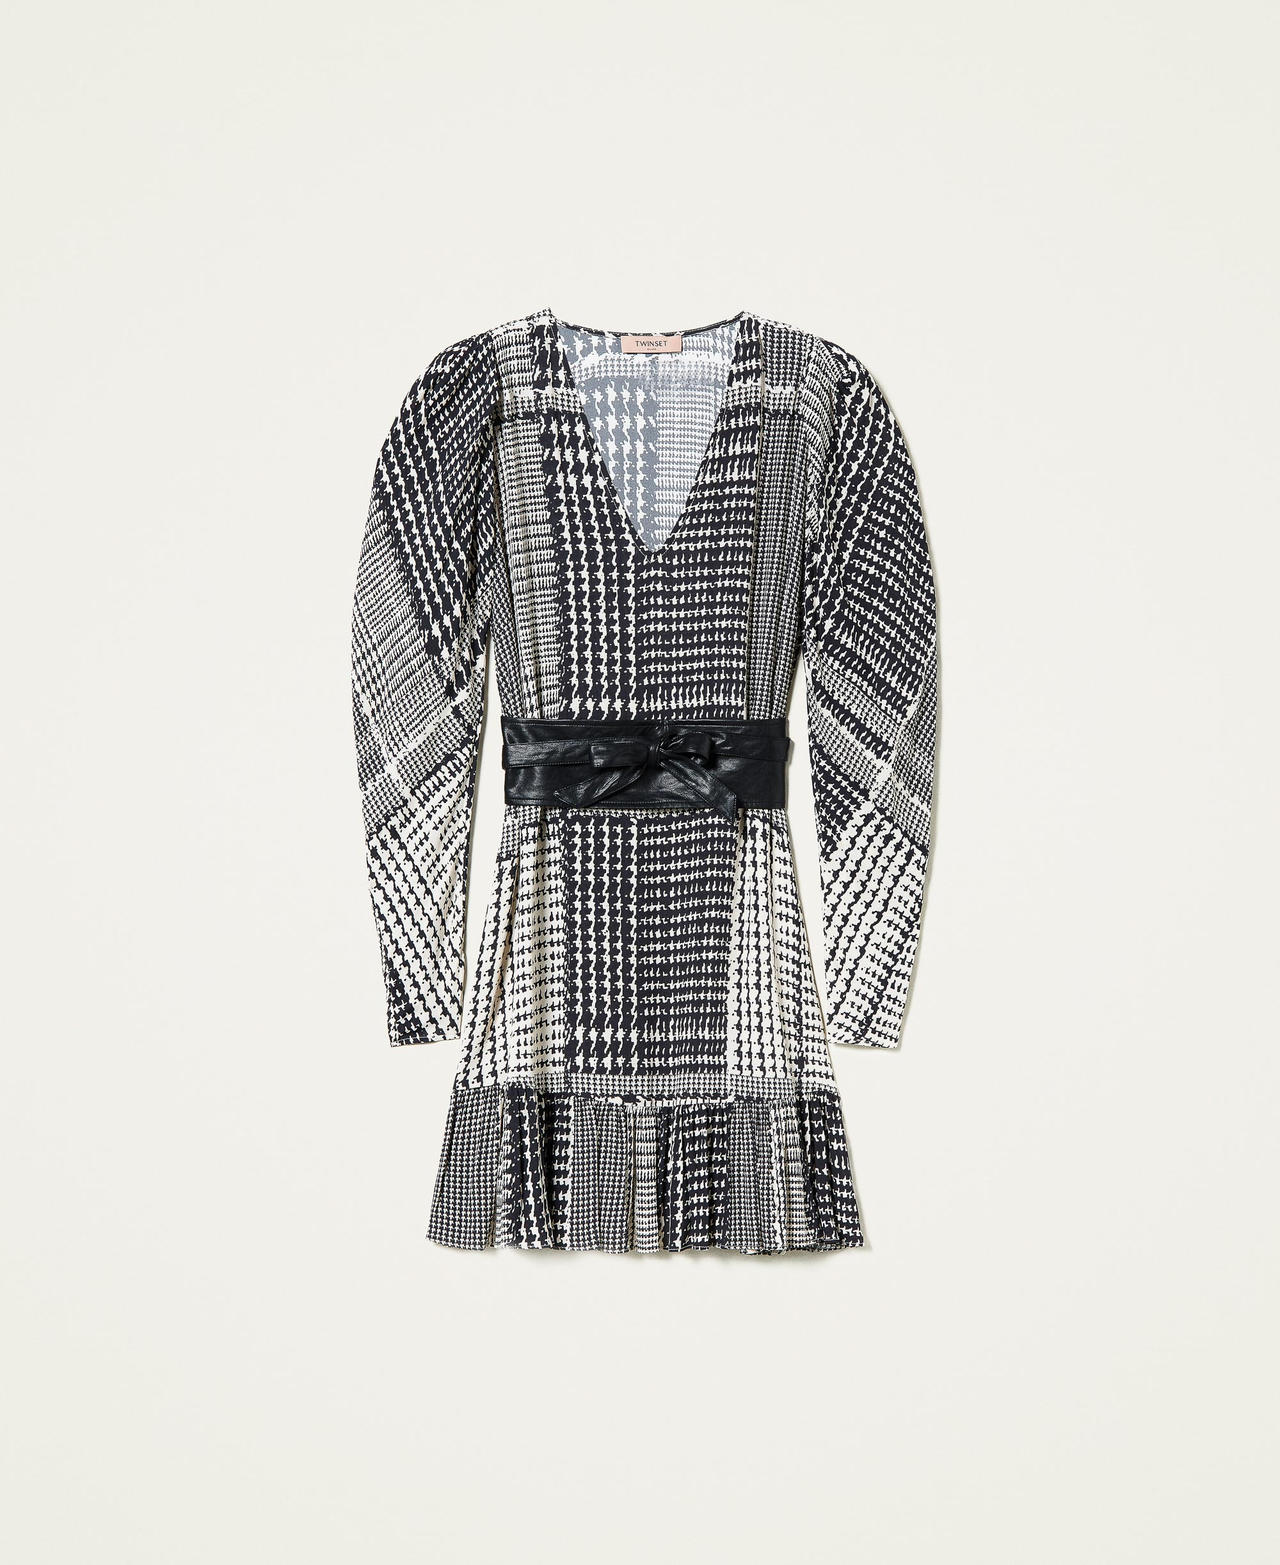 Robe avec imprimé pied-de-poule Imprimé Carreaux Bicolore Noir / Blanc « Neige » Femme 212TT234C-0S